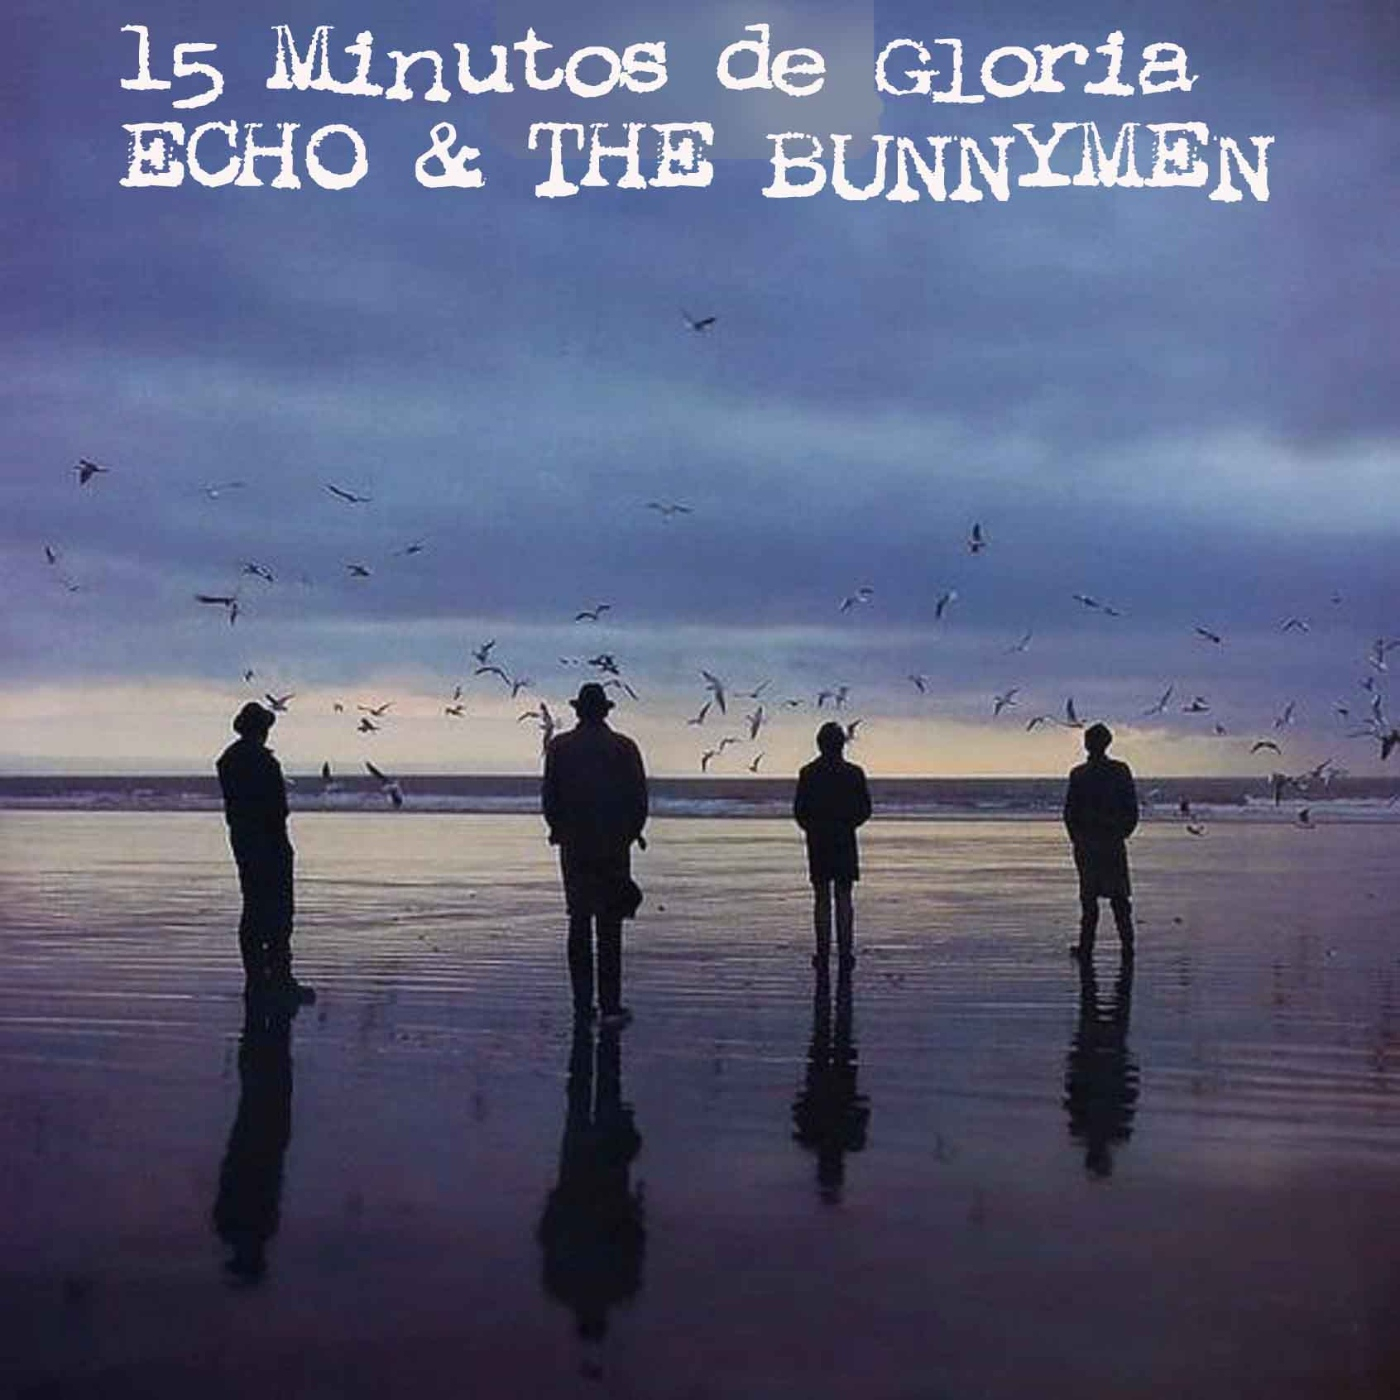 15 Minutos de Gloria Echo & the Bunnymen